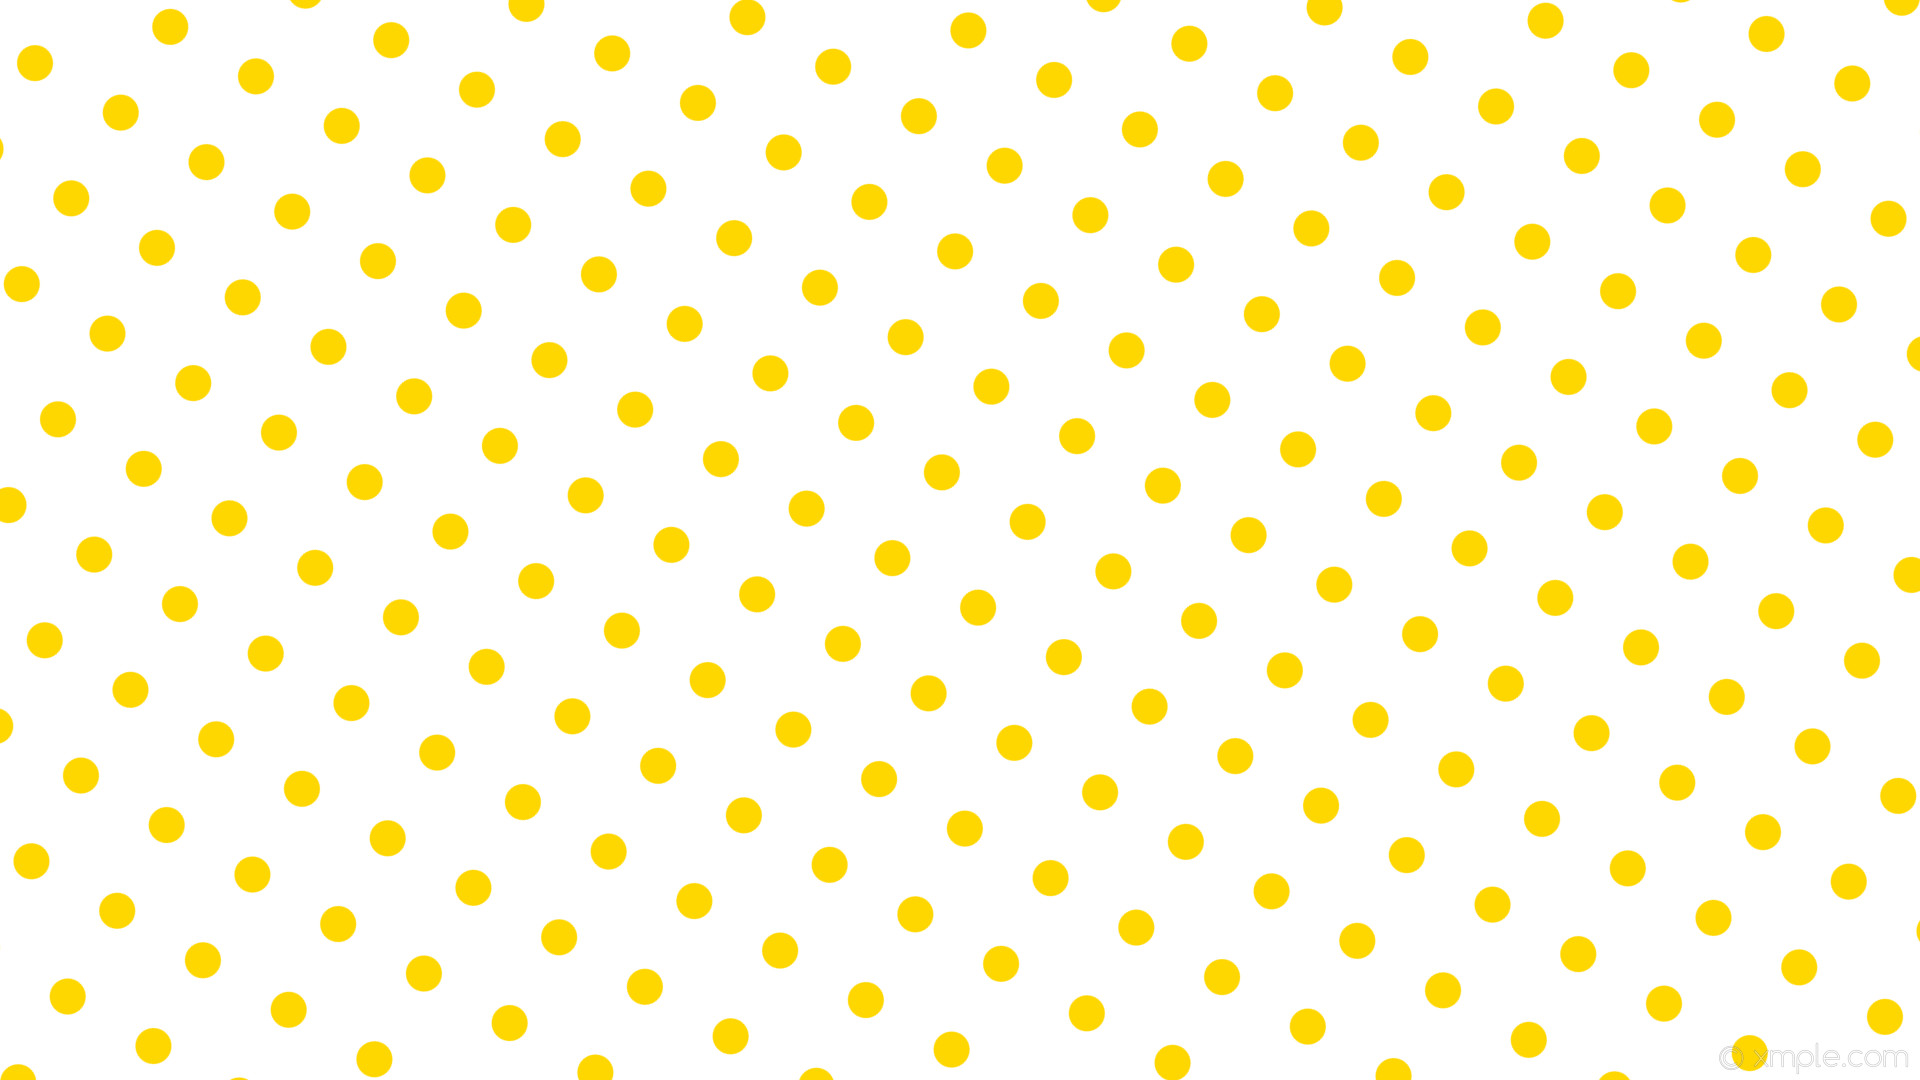 1920x1080 wallpaper yellow polka white spots dots gold #ffffff #ffd700 240Â° 36px 99px